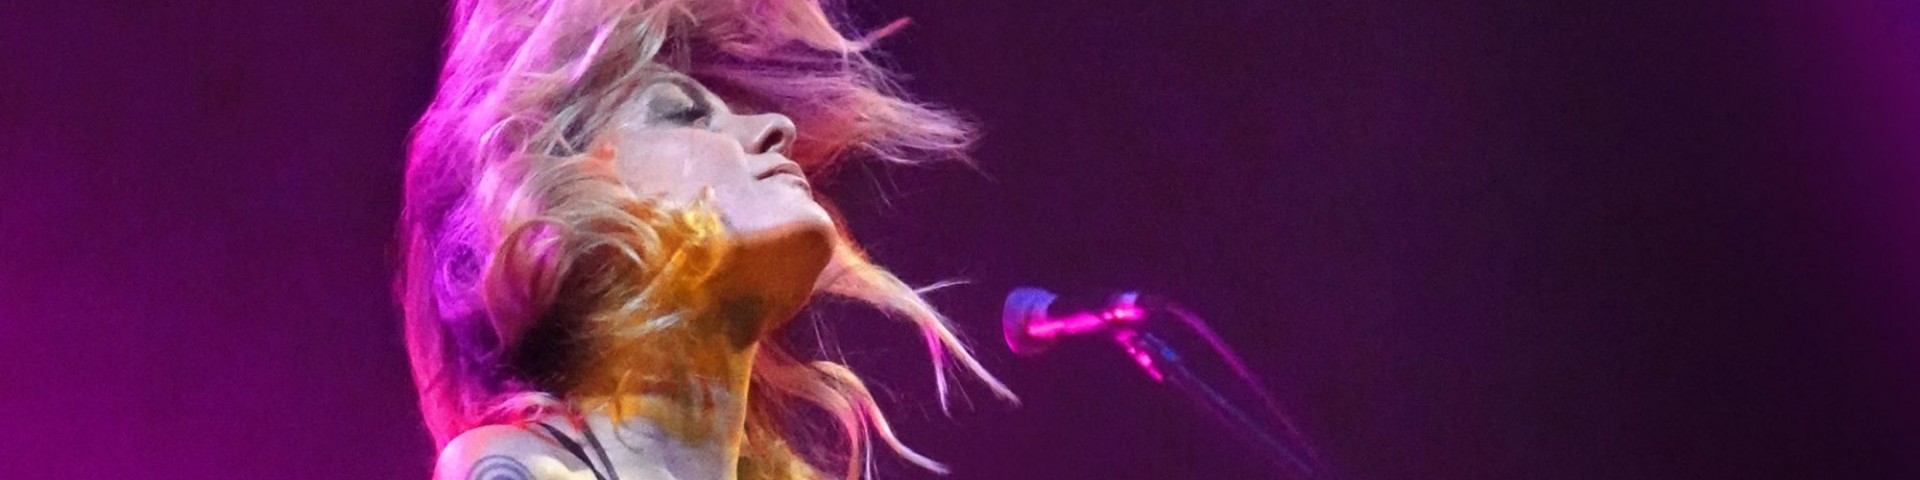 Irene Grandi: “Finalmente io” è il titolo della canzone di Sanremo 2020